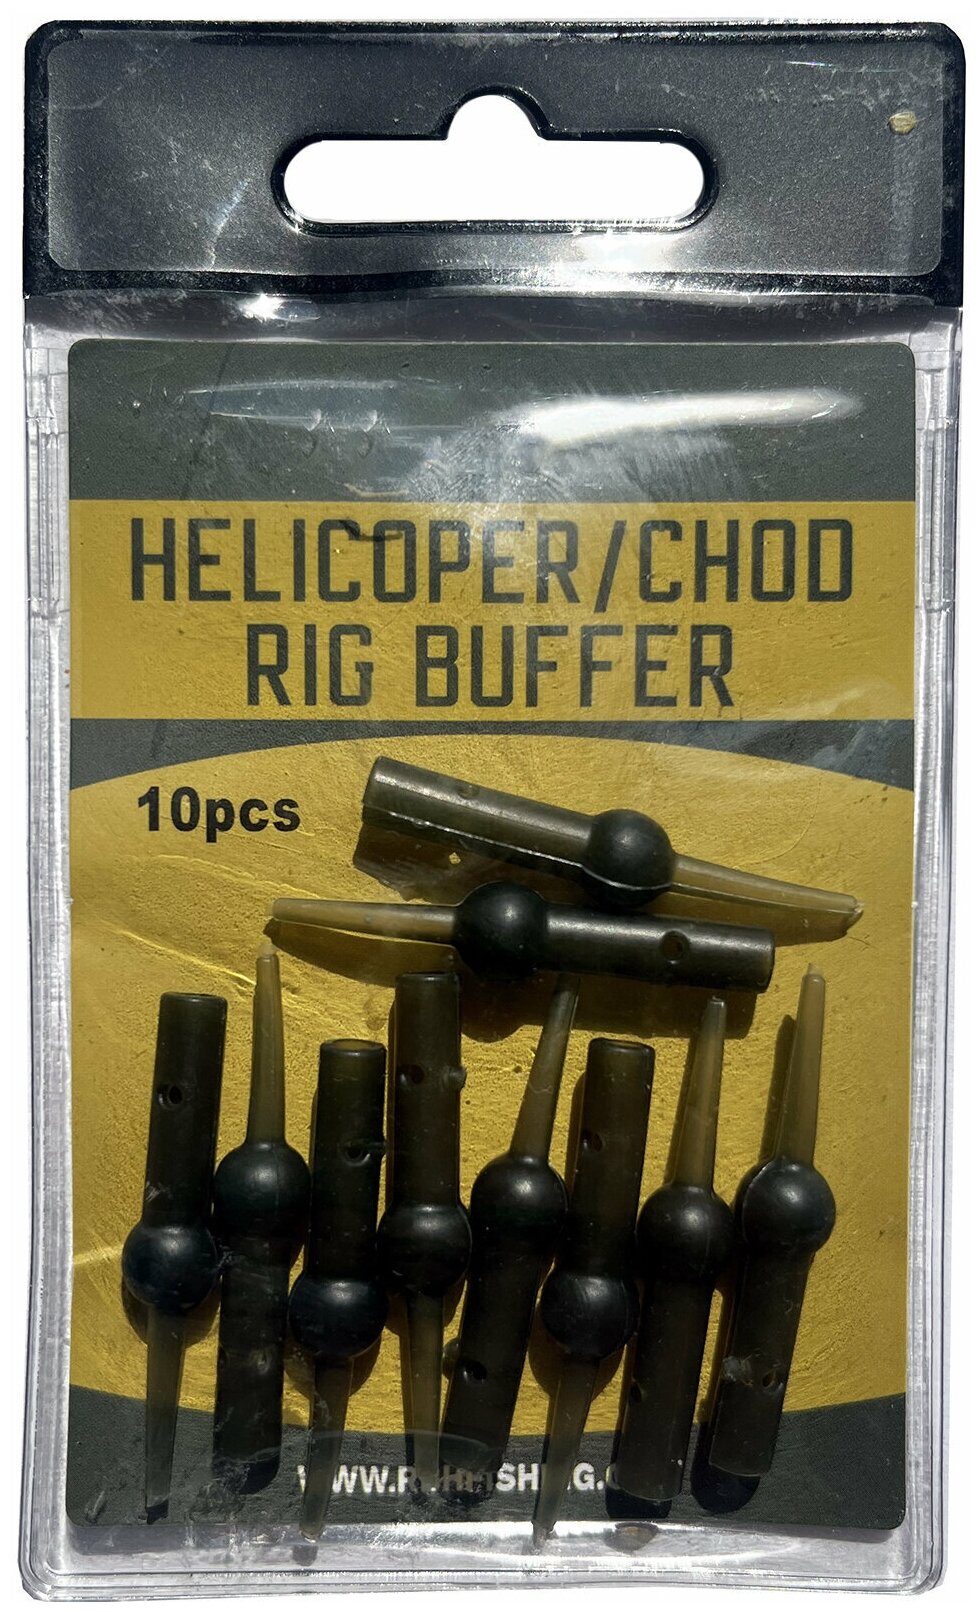 Конус для карповых монтажей вертолет и чод-риг / Буфер отбойник Helicoper/Chod Rig Buffer 10шт